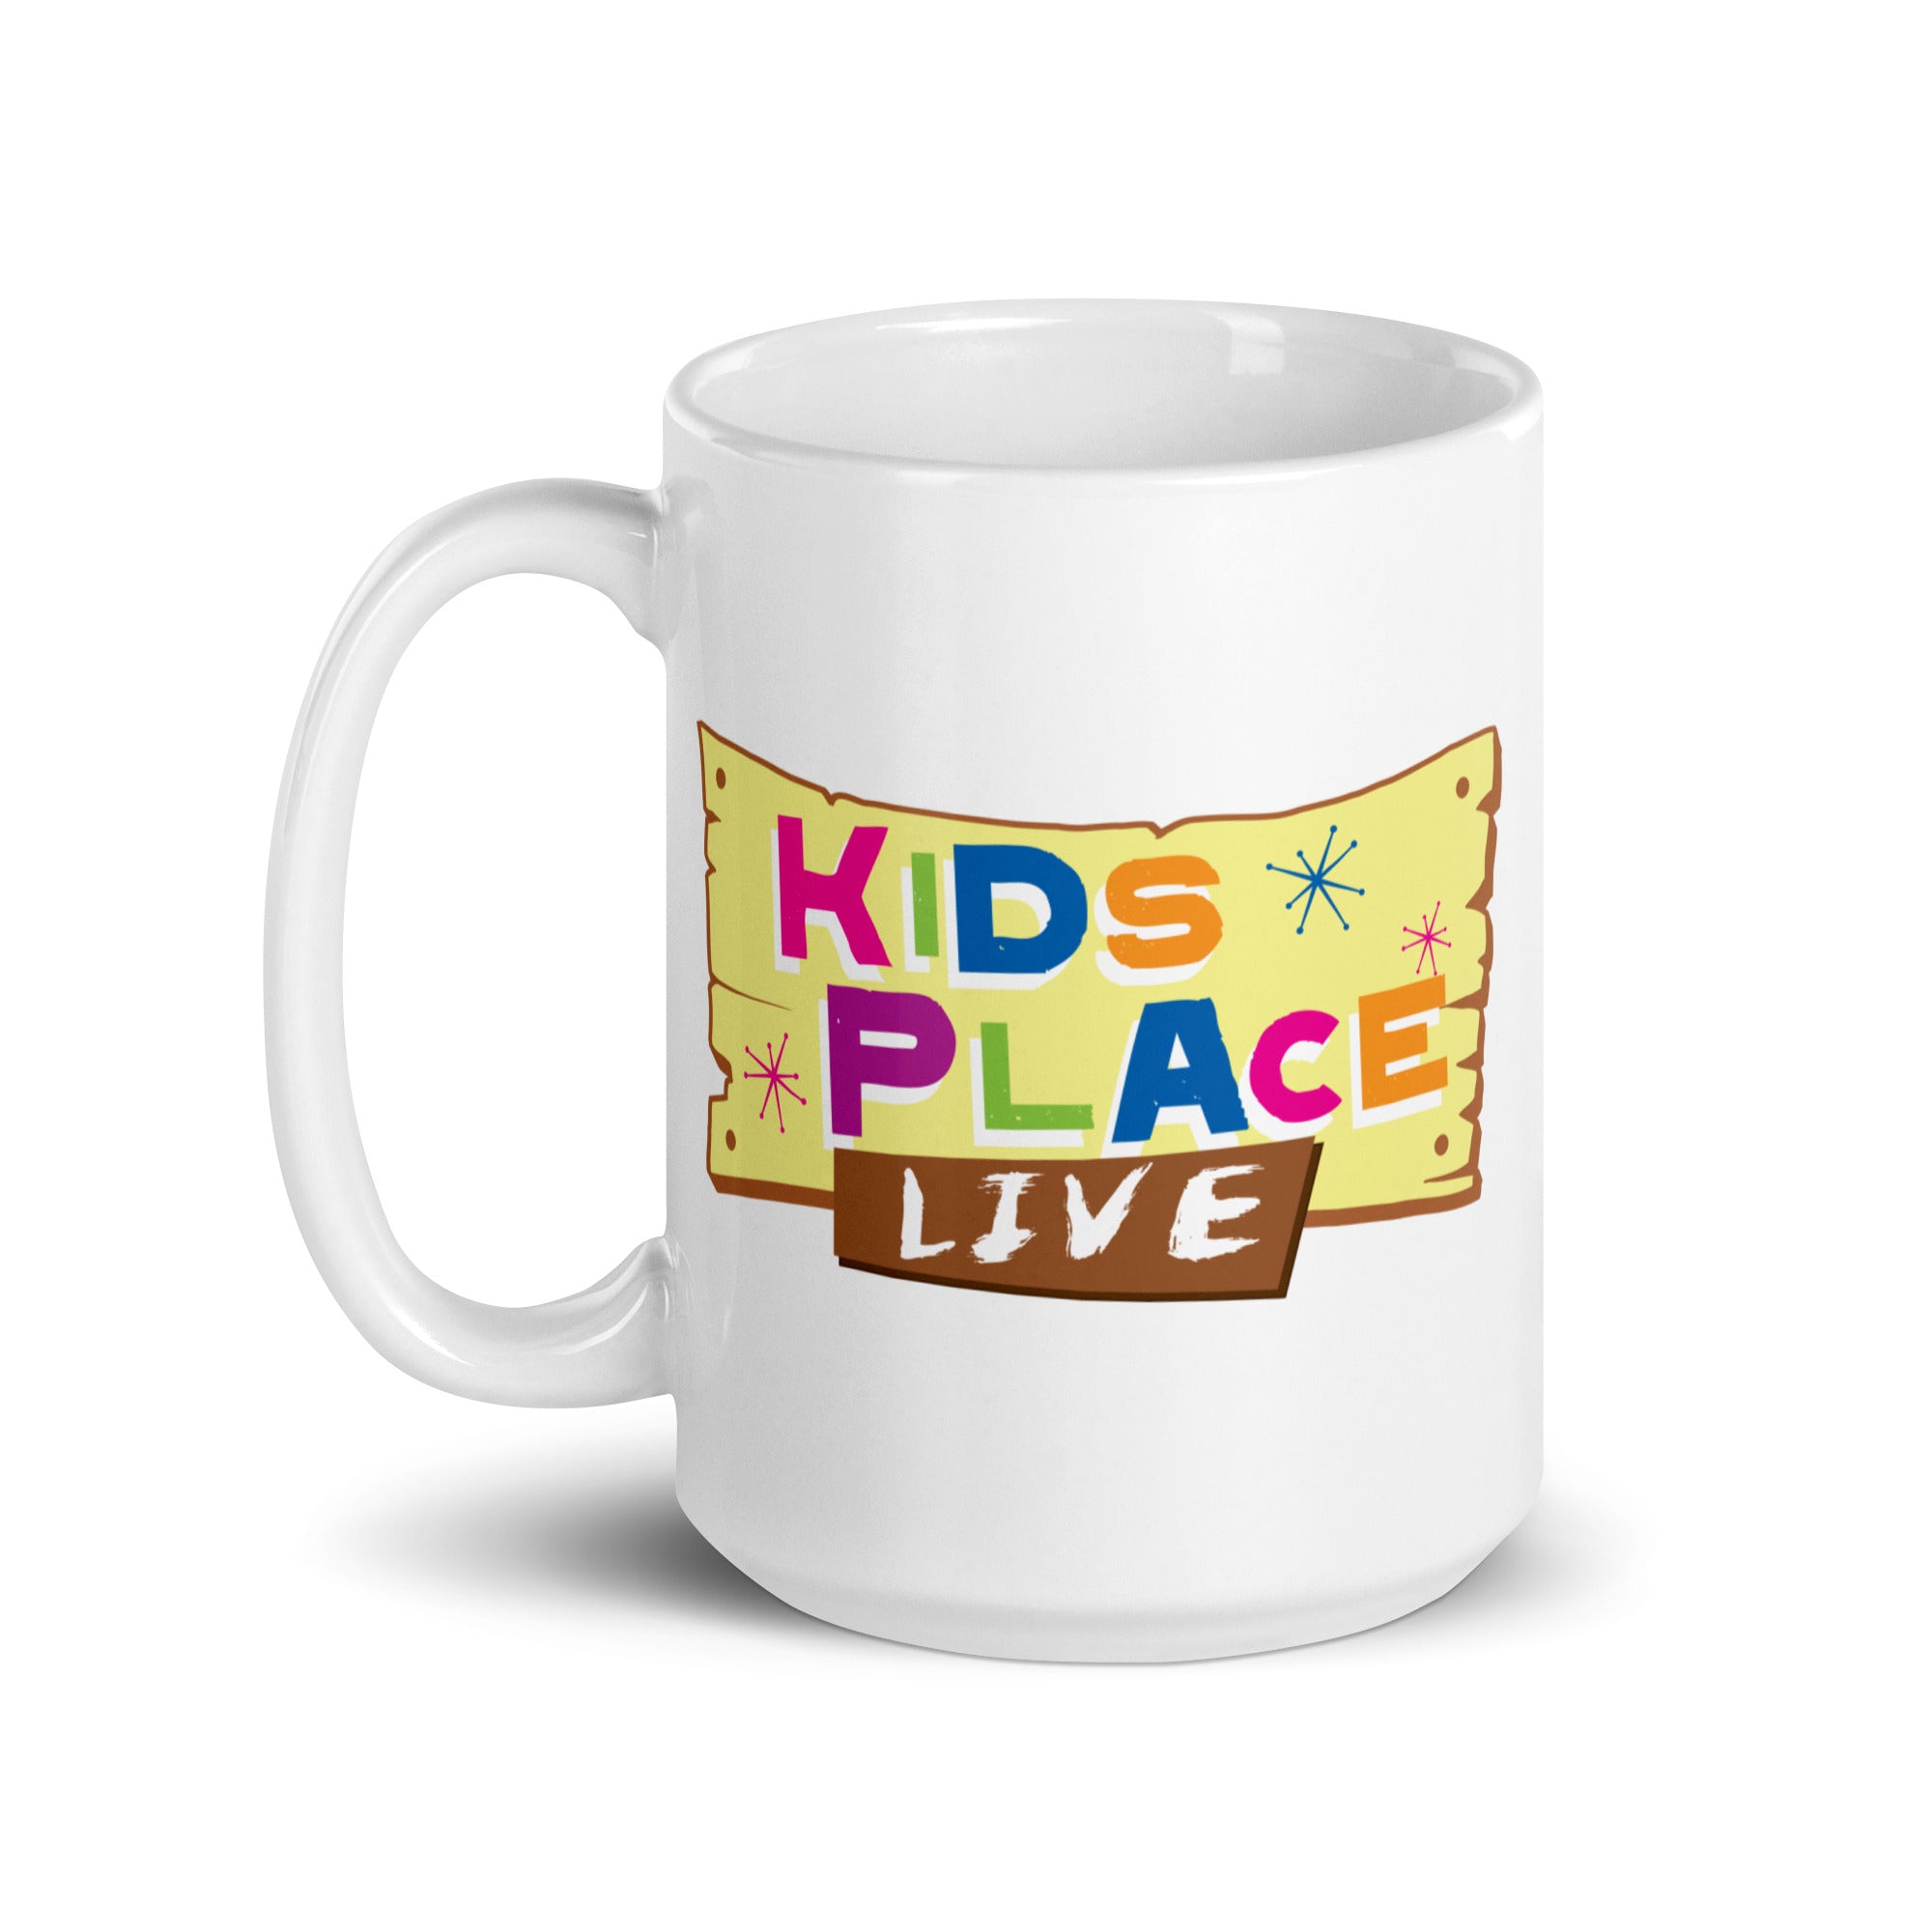 Kids Place Live: Mug